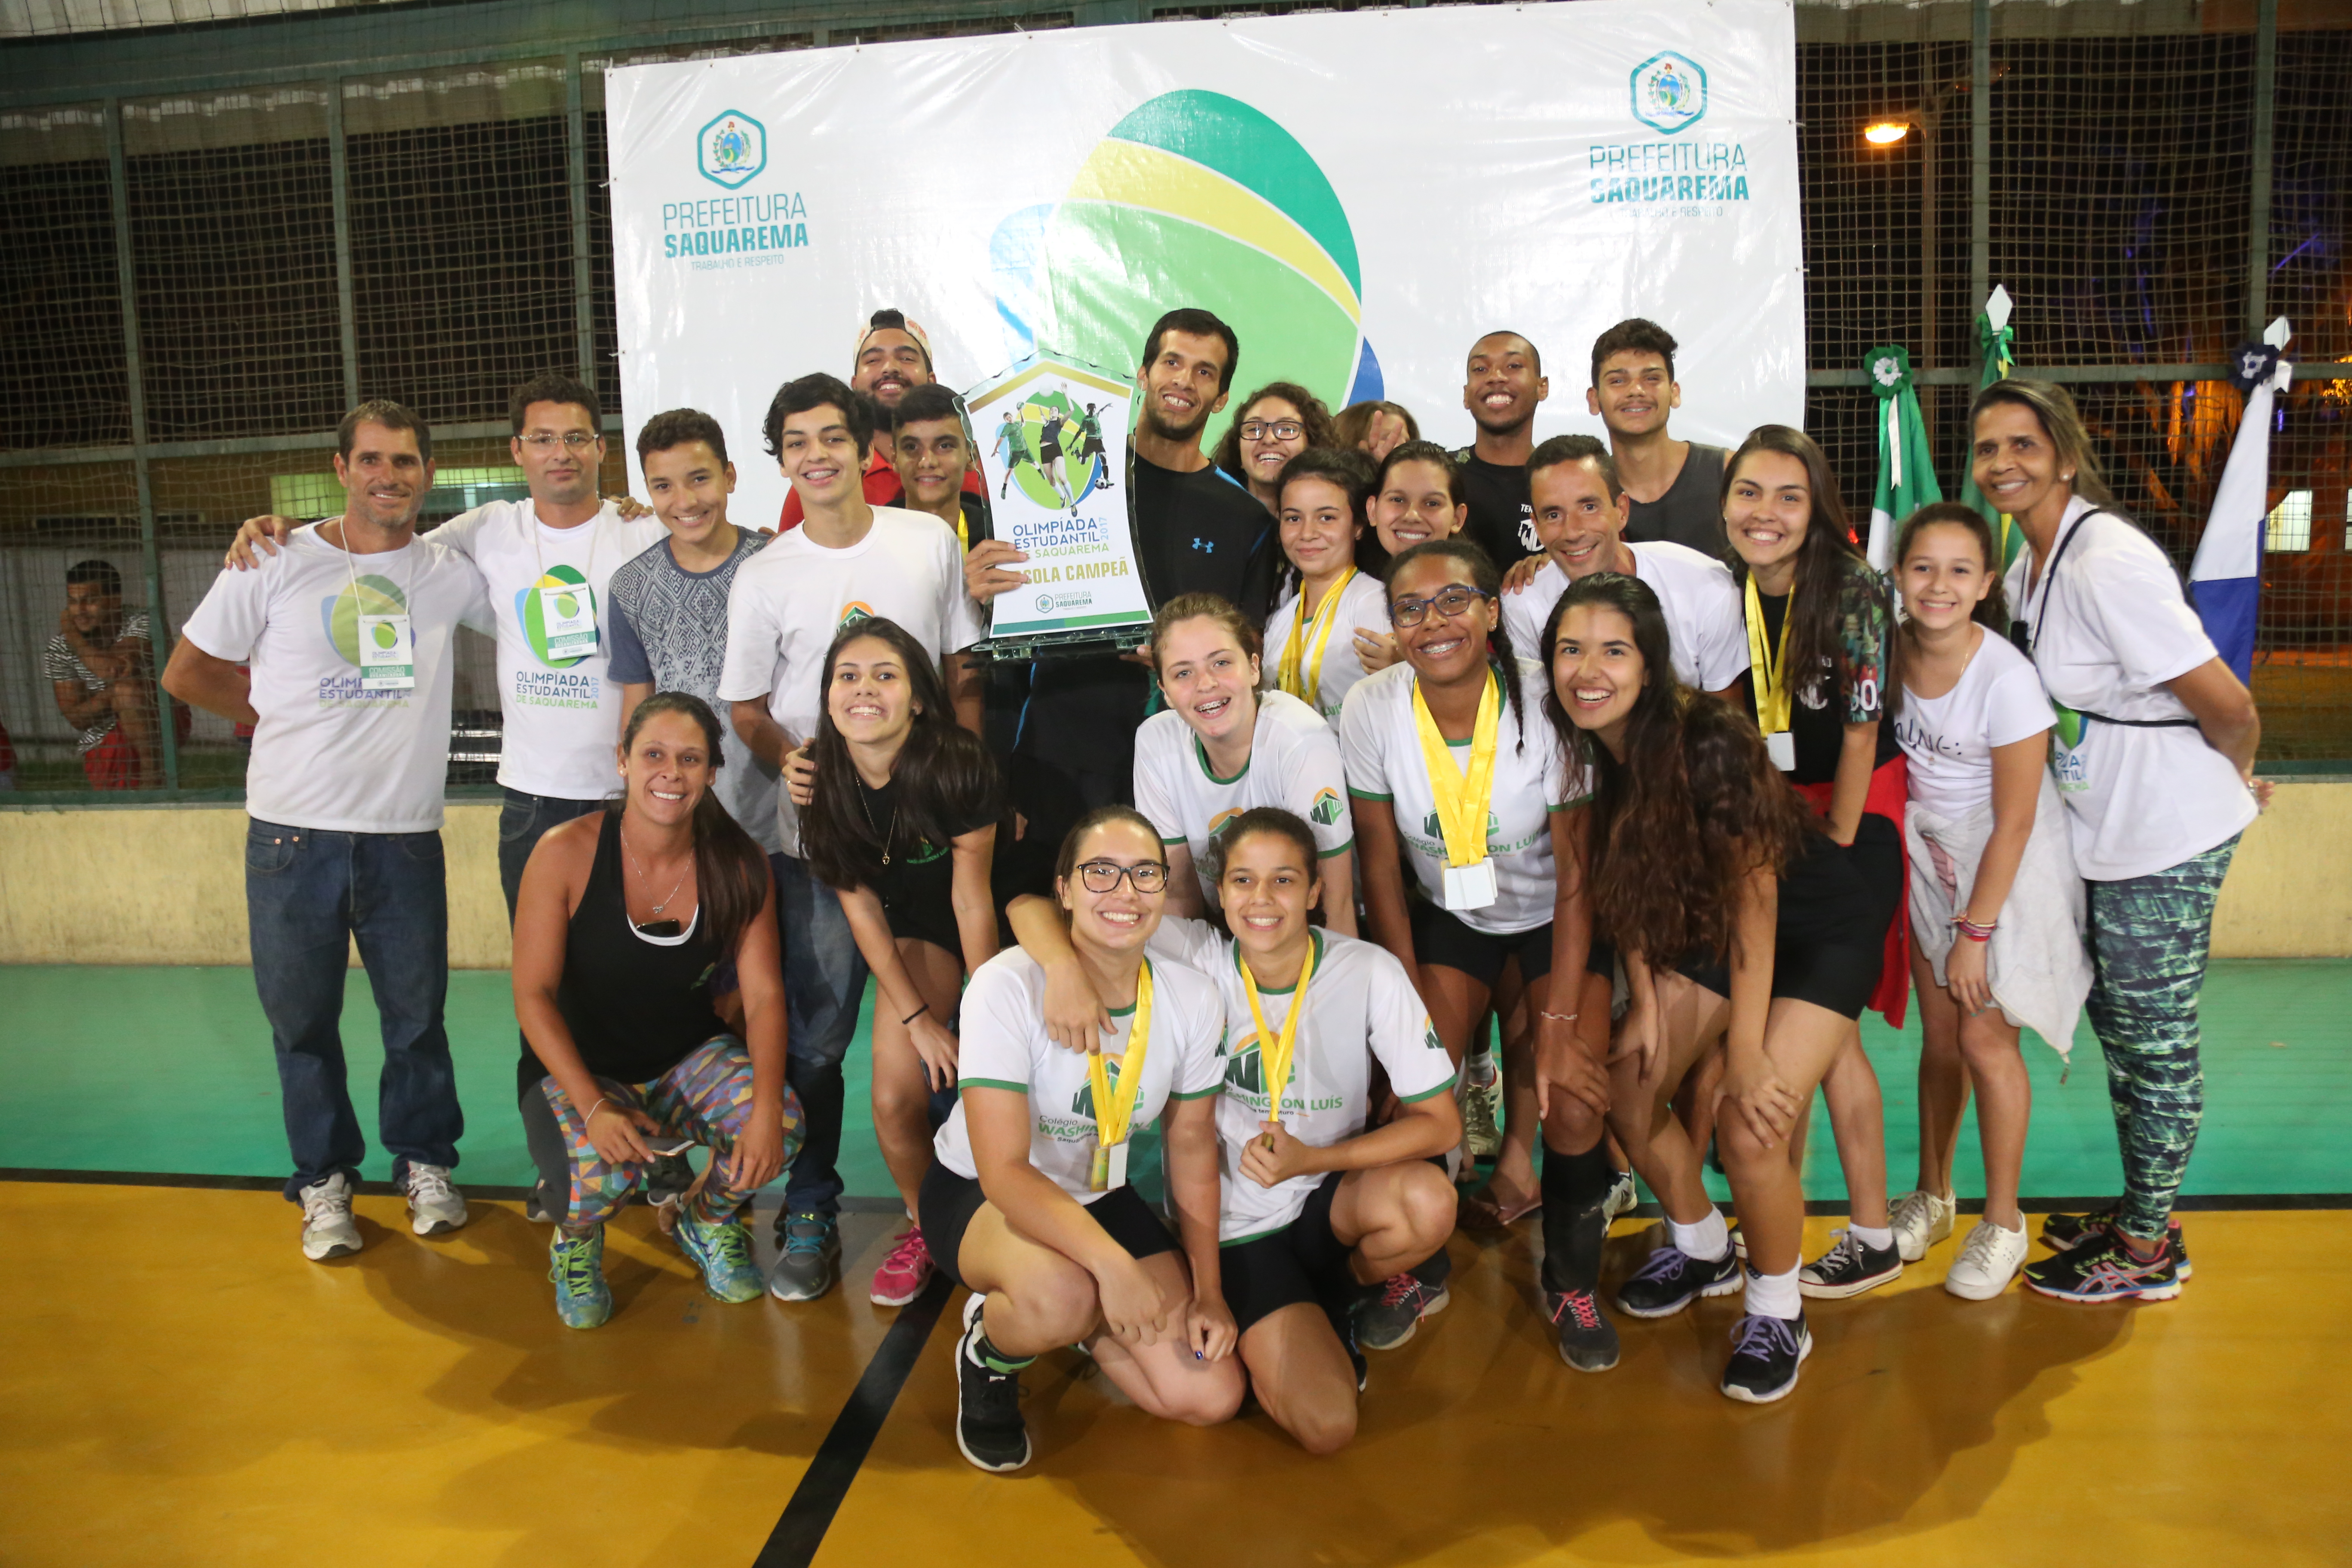 Esportes e ginástica - Bacaxá, Saquarema - Bonsucesso, Rio de Janeiro